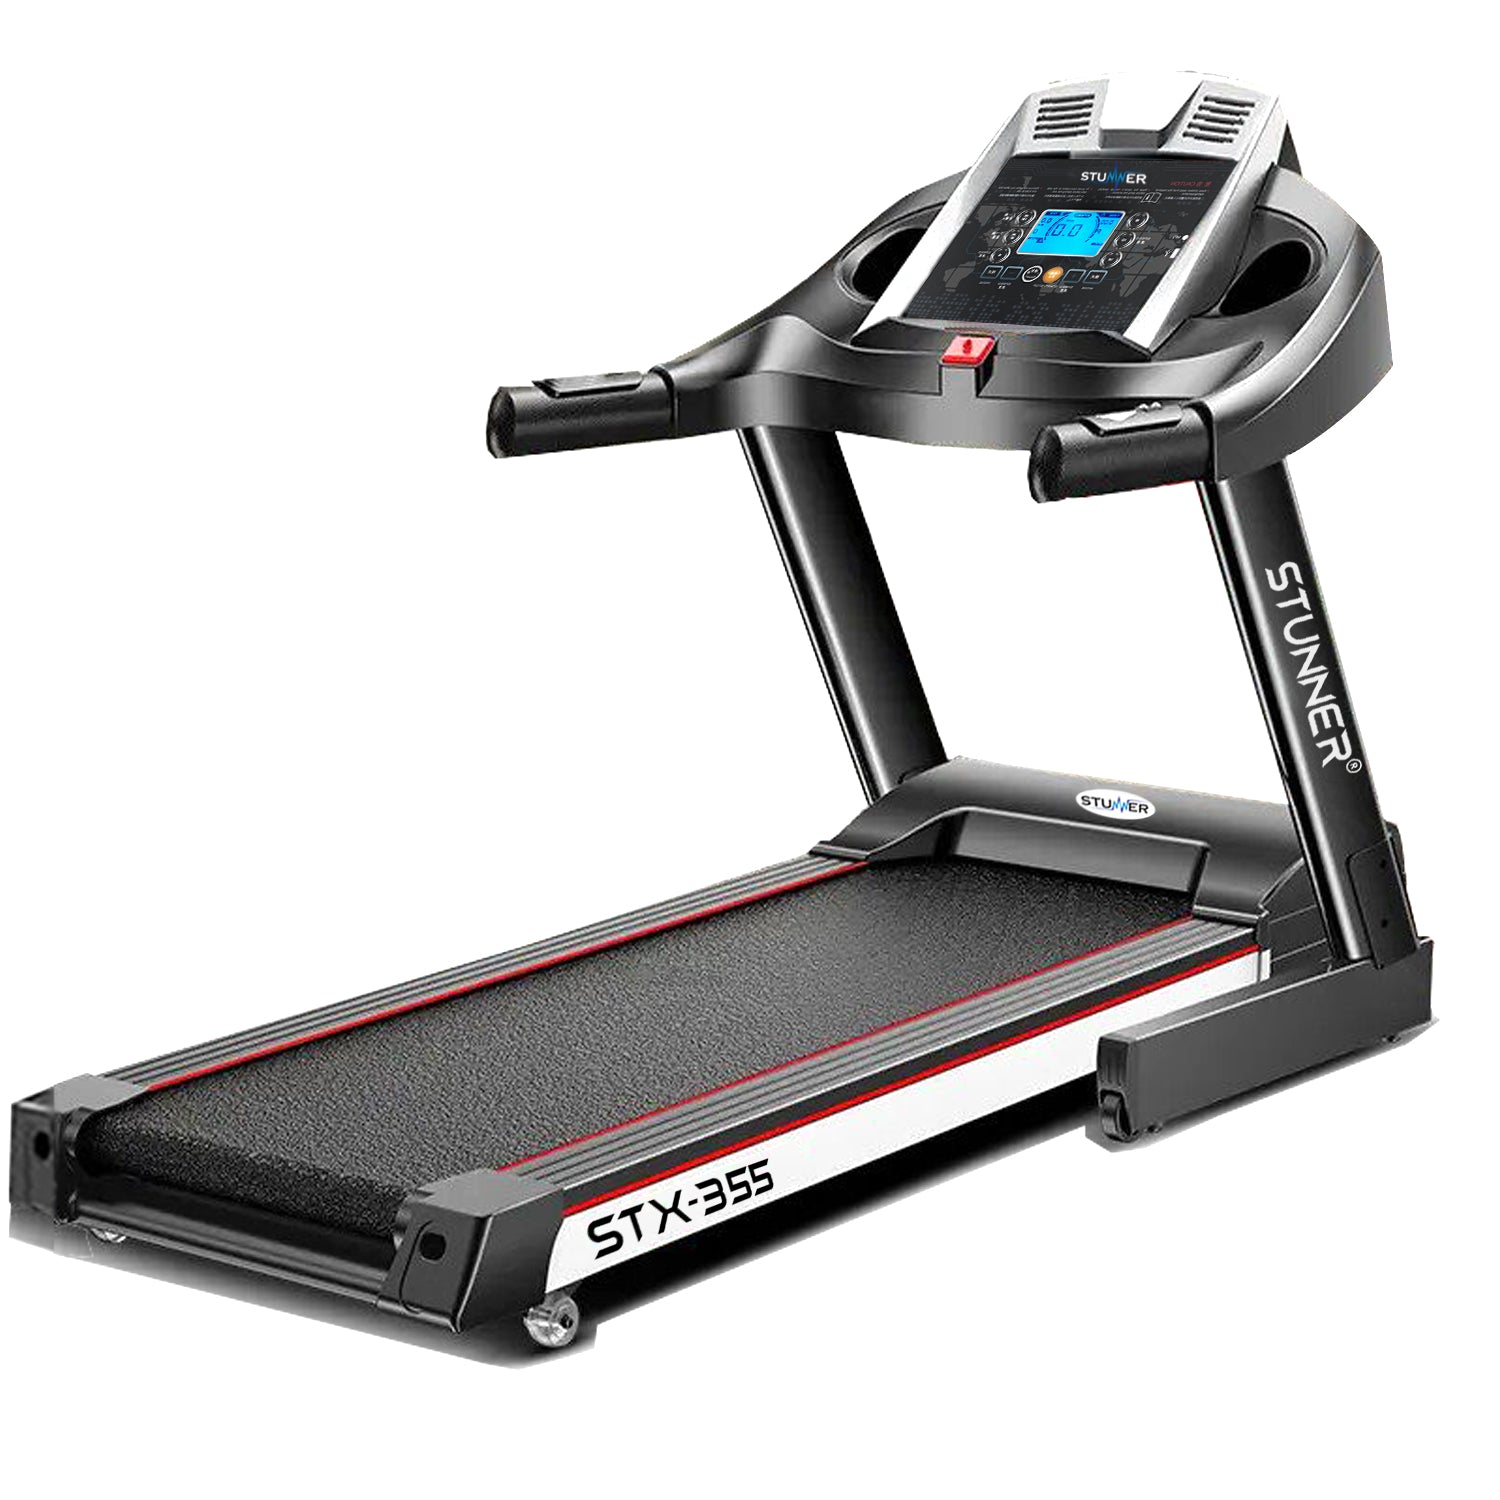 STX-355 Motorized Treadmill